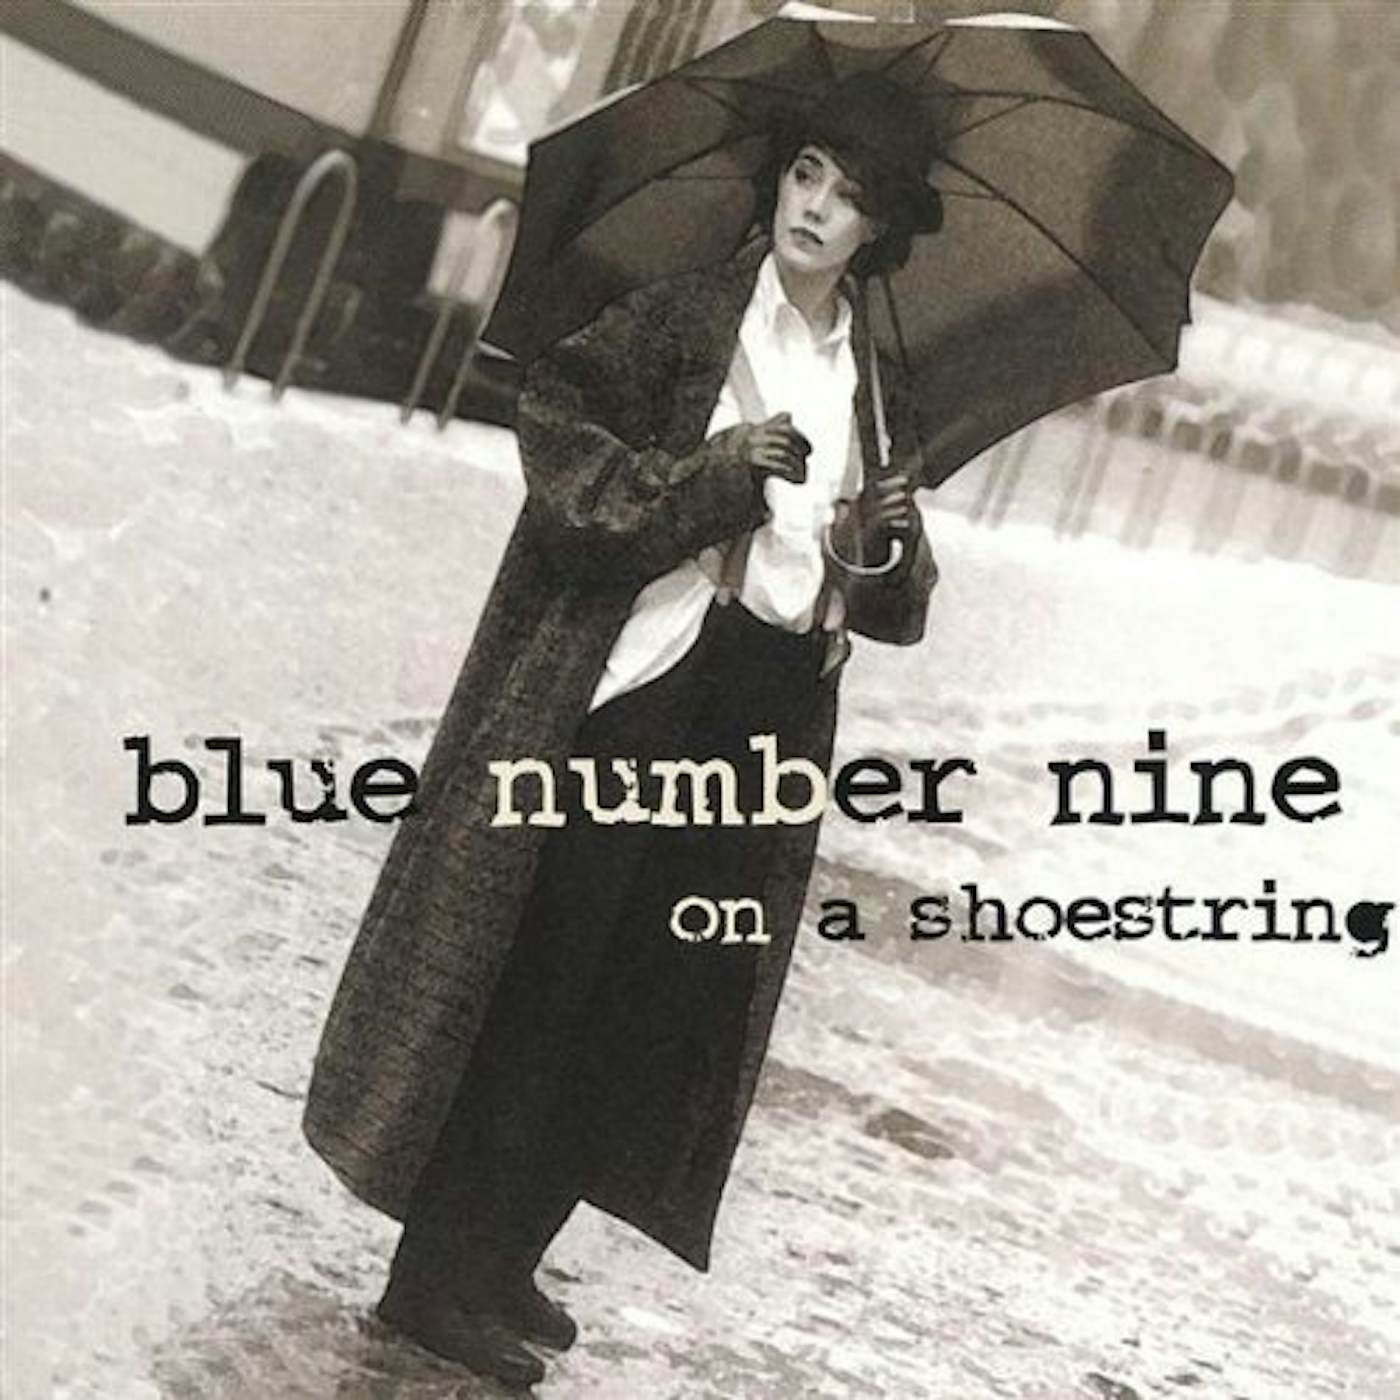 blue number nine ON A SHOESTRING CD